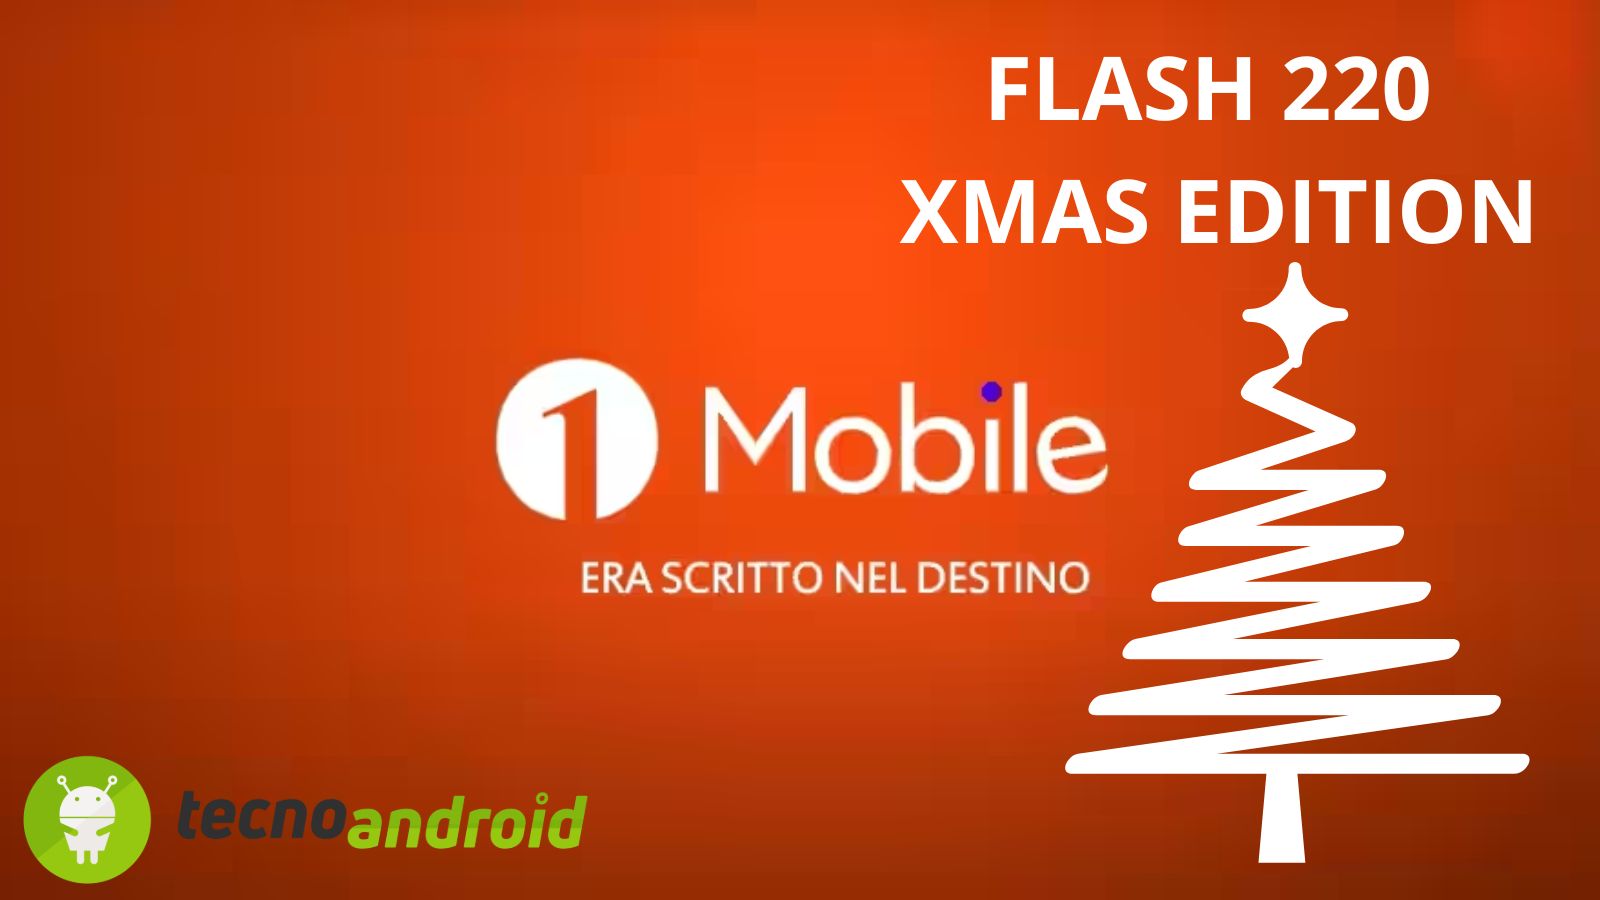 Arriva Flash 220 XMas Edition: il regalo di 1Mobile ai suoi utenti